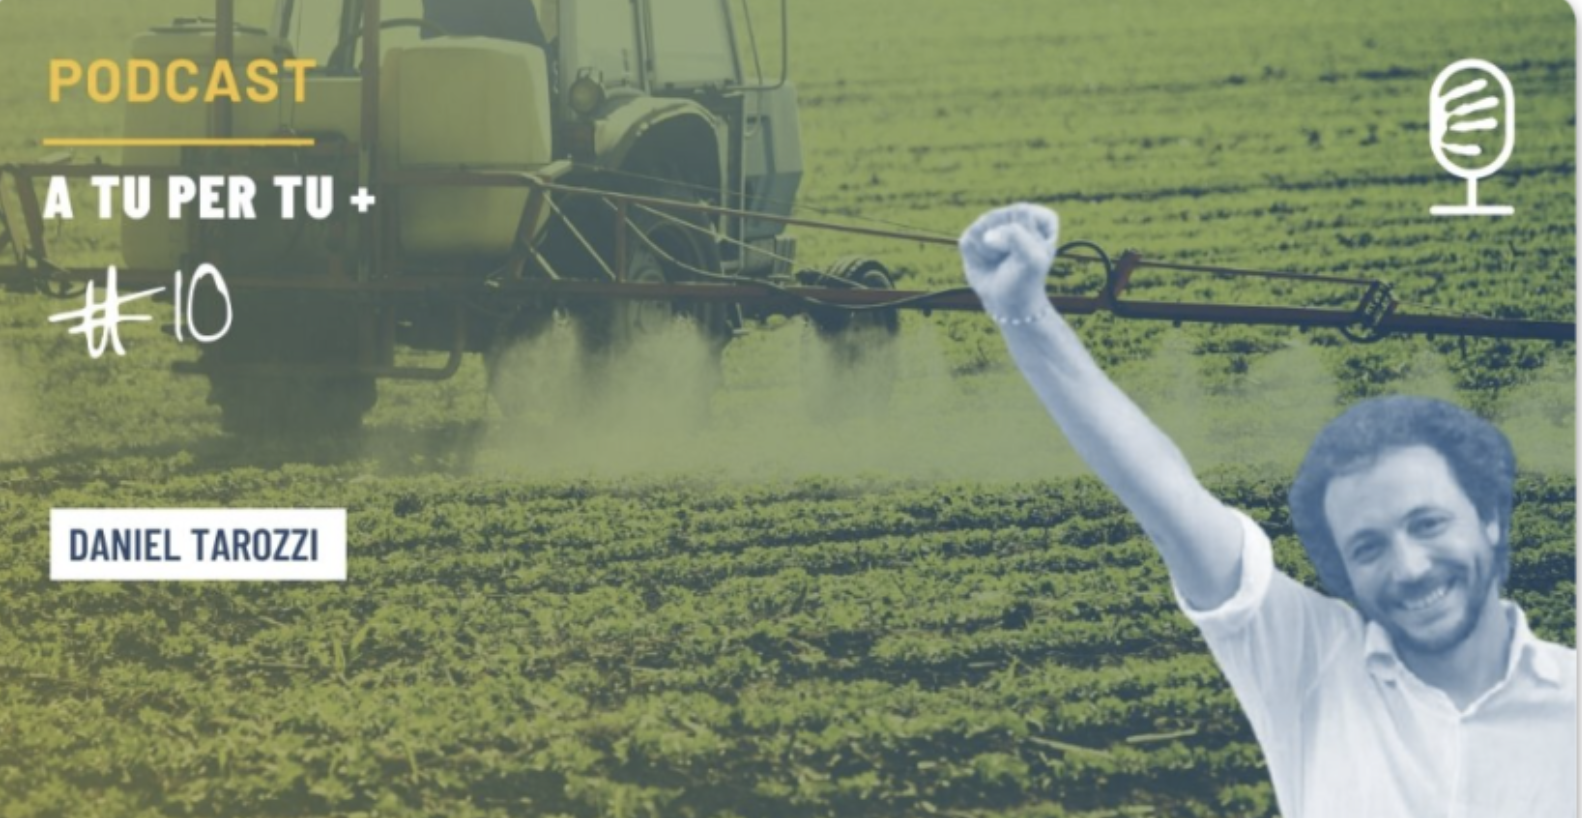 Pesticidi, qual è la situazione reale? E come fare a mangiare senza avvelenarsi? – A tu per tu + #10